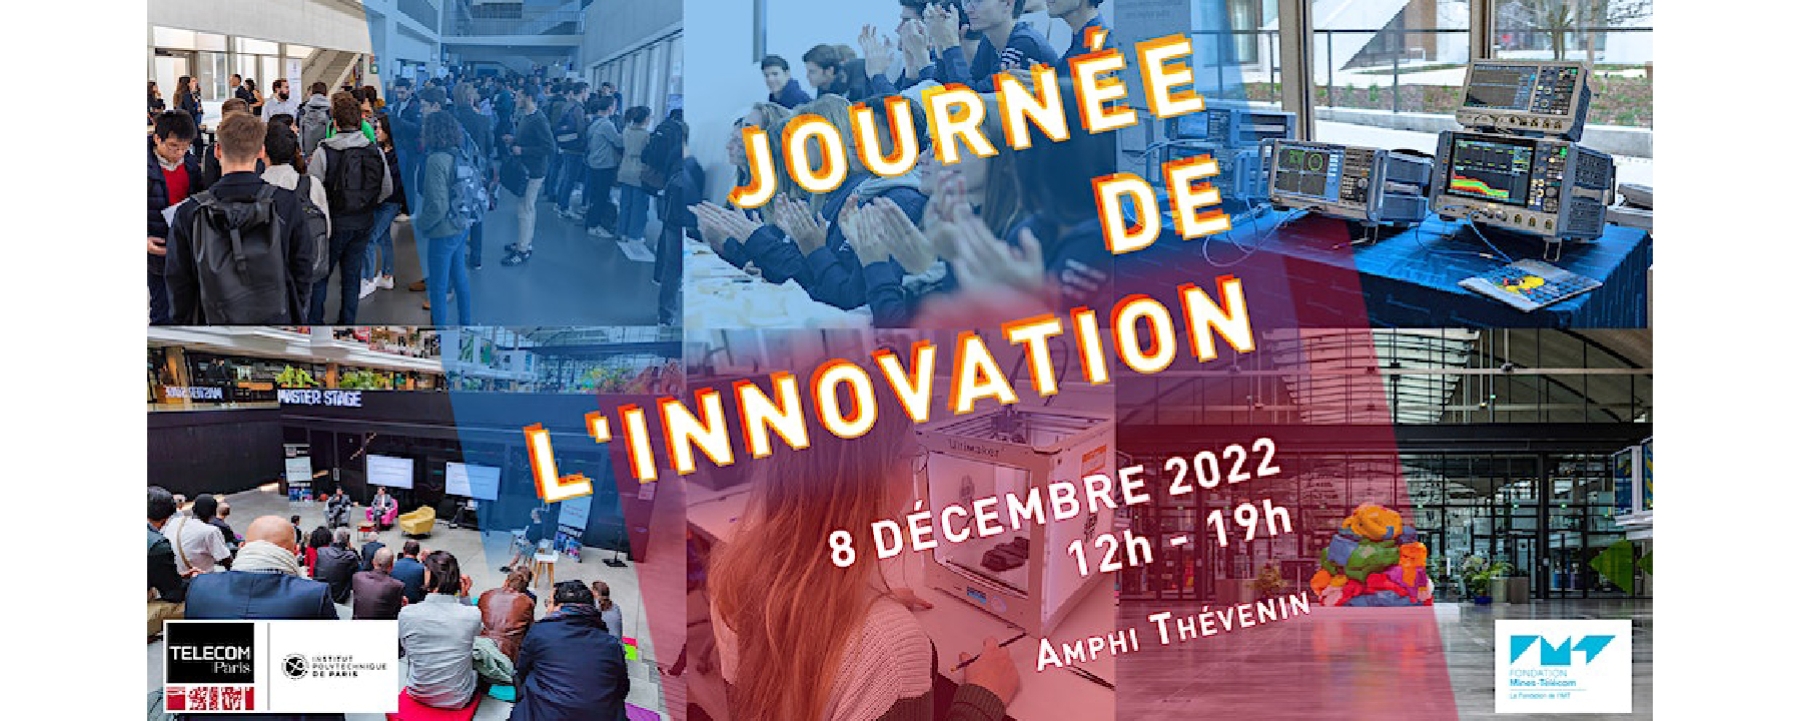 Journée de l'innovation 2022